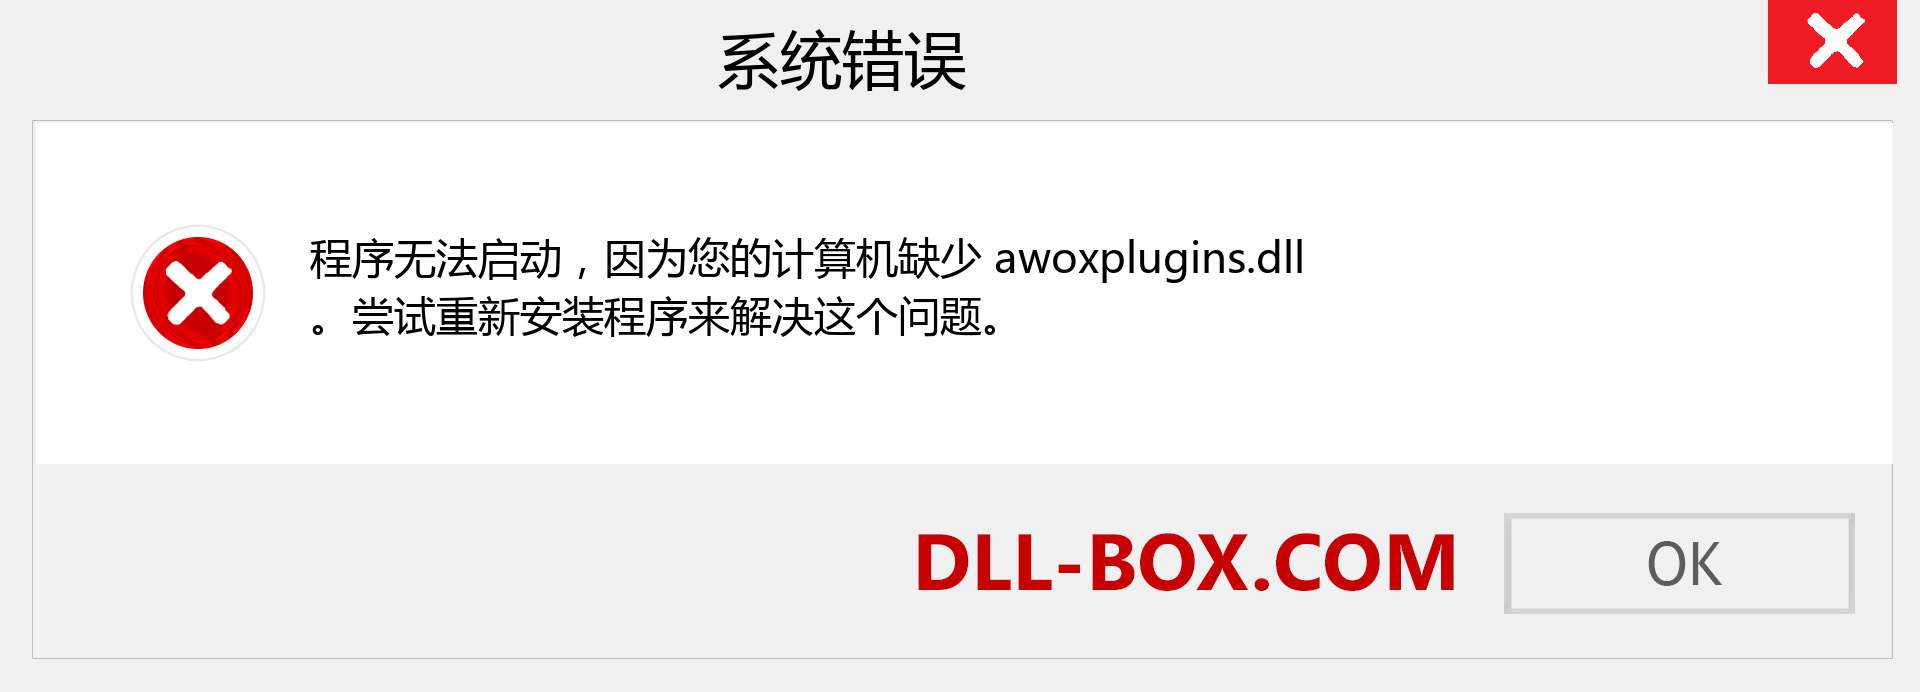 awoxplugins.dll 文件丢失？。 适用于 Windows 7、8、10 的下载 - 修复 Windows、照片、图像上的 awoxplugins dll 丢失错误